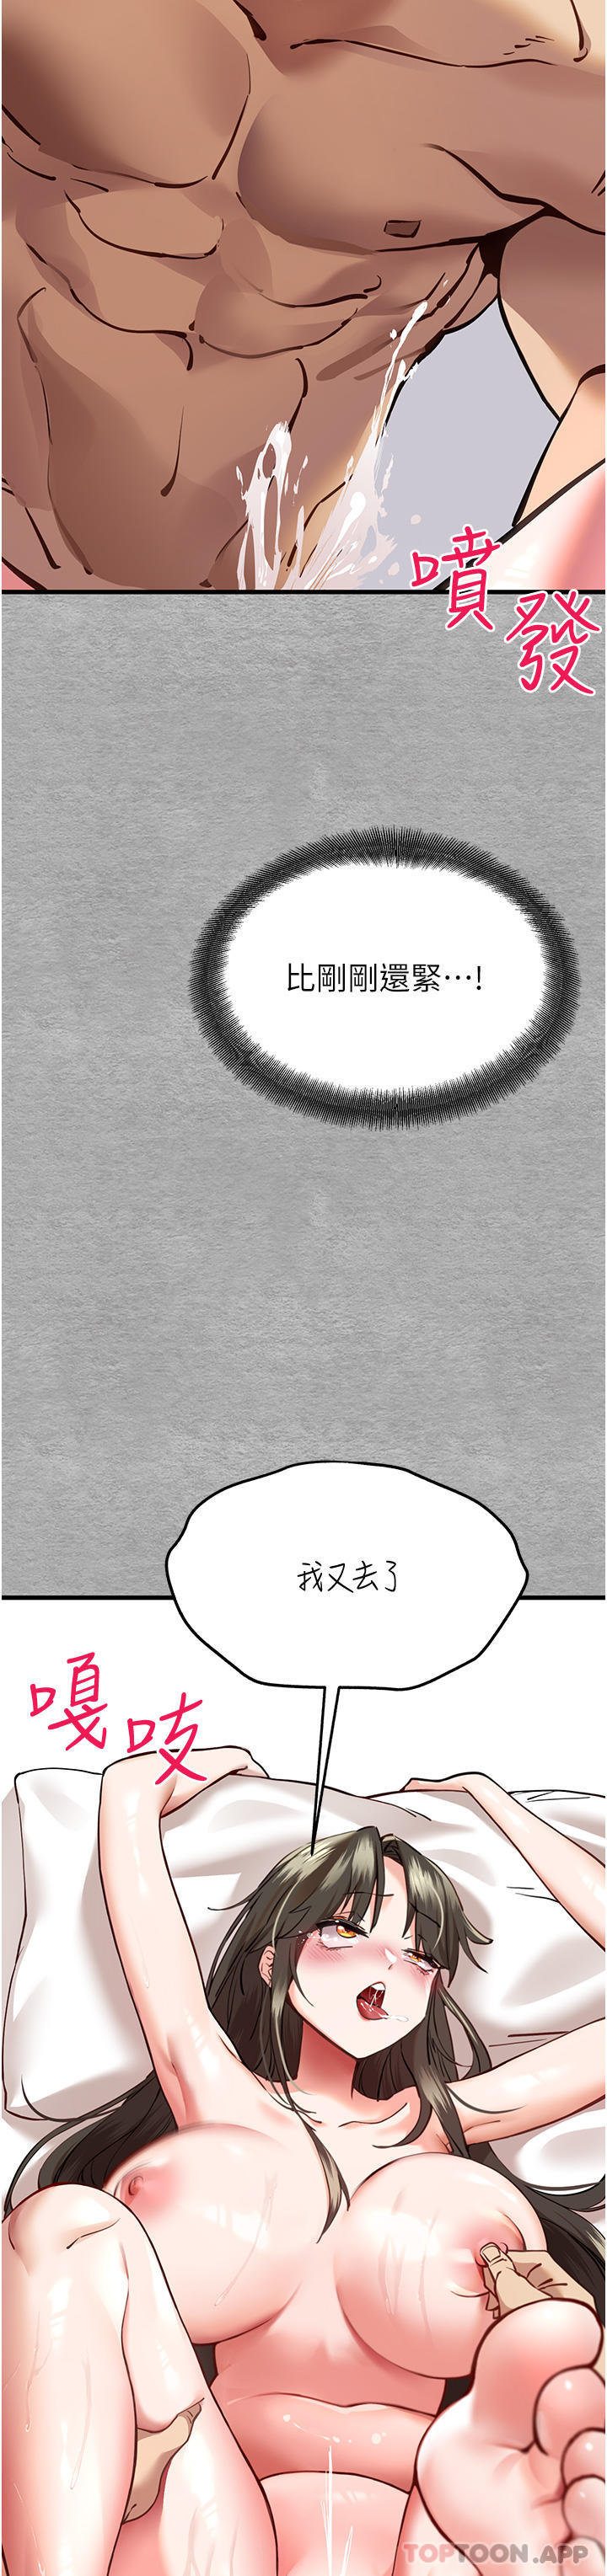 韩国污漫画 初次深交，請多指教 第5话-被陌生男子剧情推到高潮了? 16